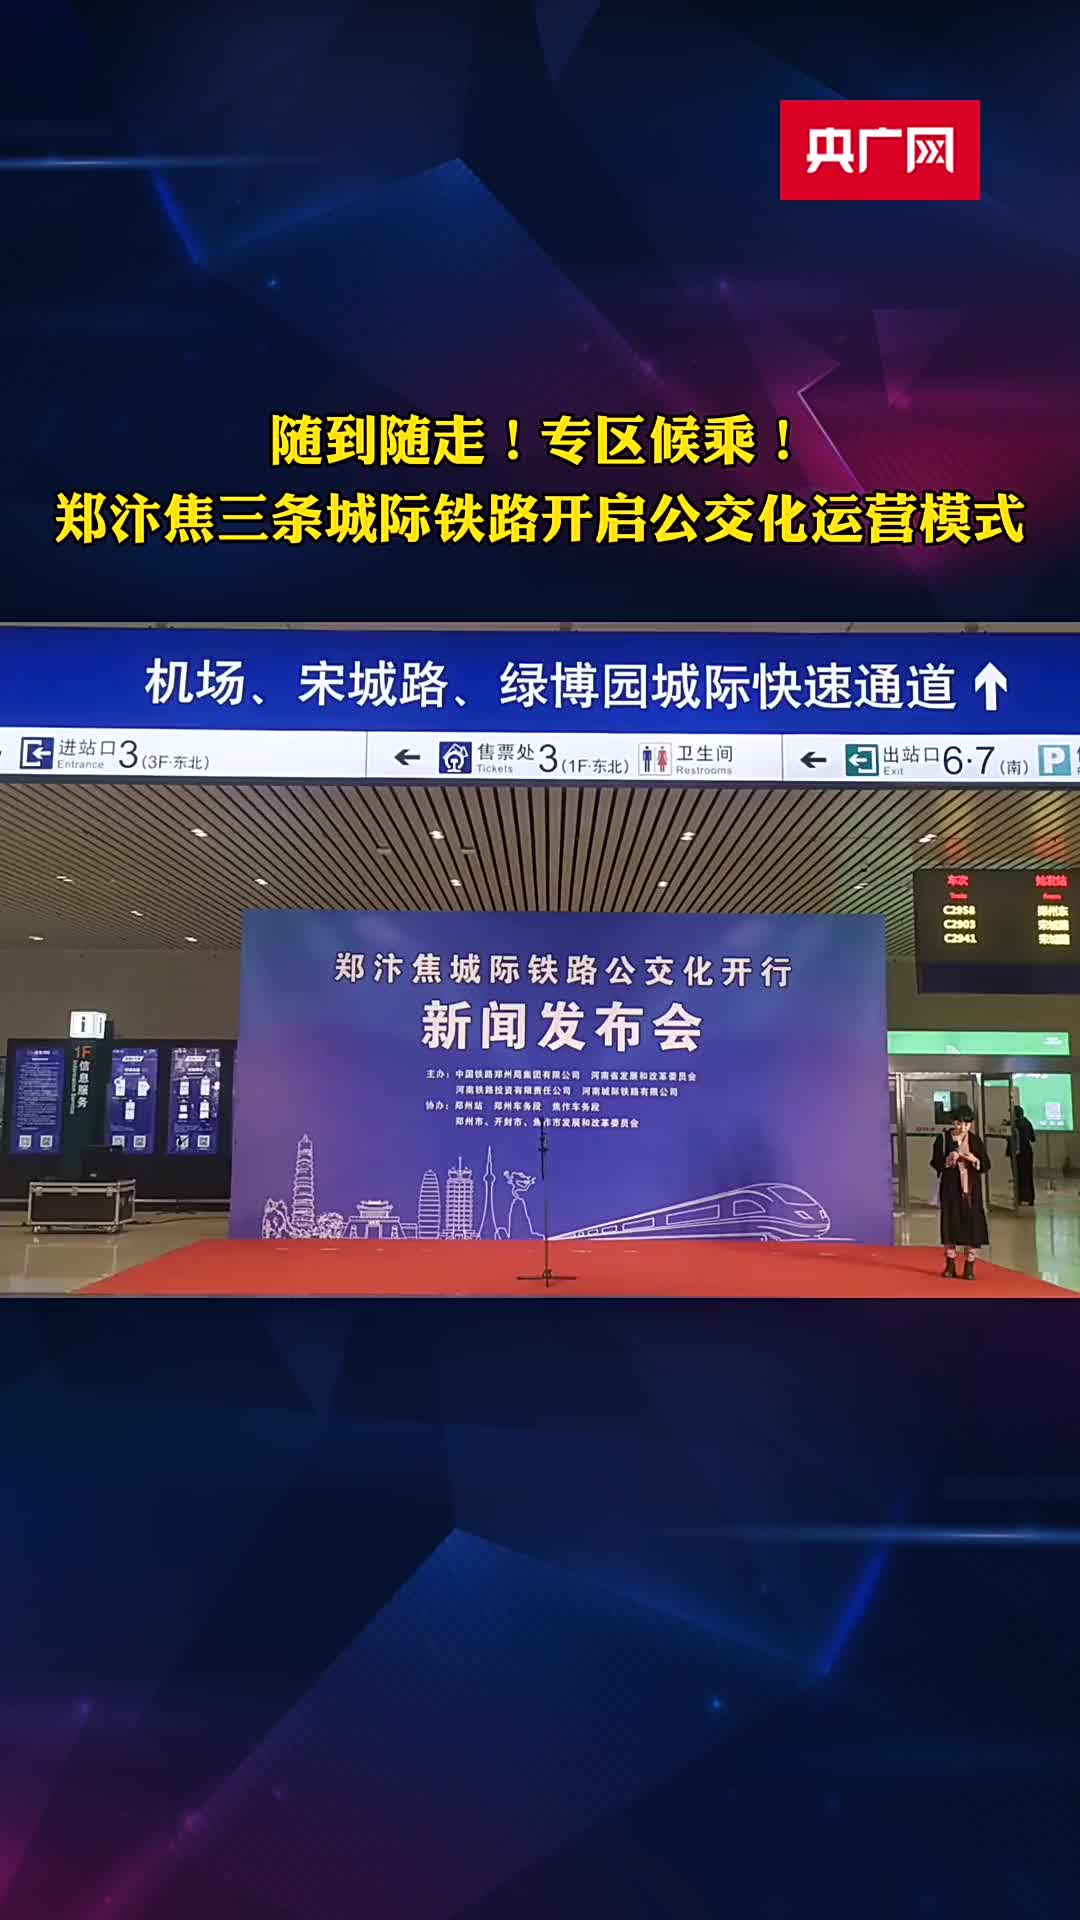 最短间隔8分钟郑汴焦三条城际铁路开启公交化运营模式